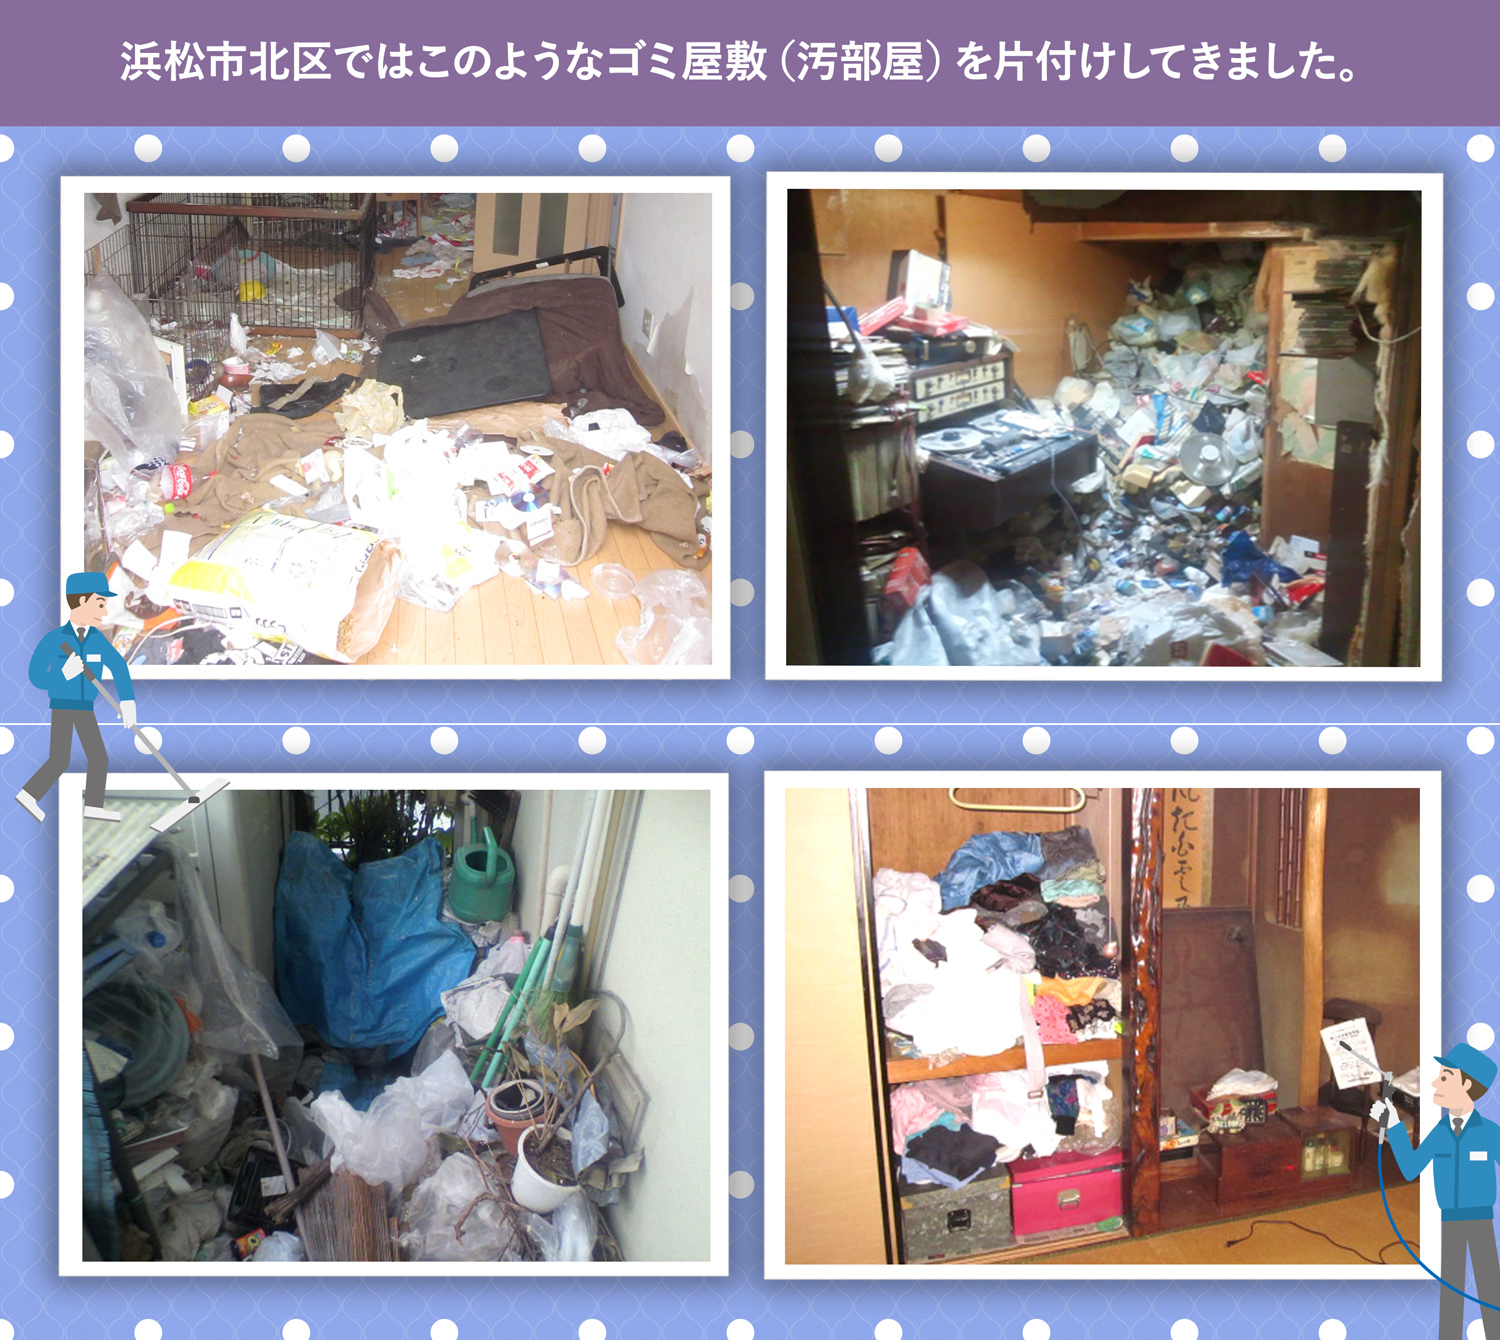 浜松市北区で行ったで行ったごみ屋敷・汚部屋の片付けの一例